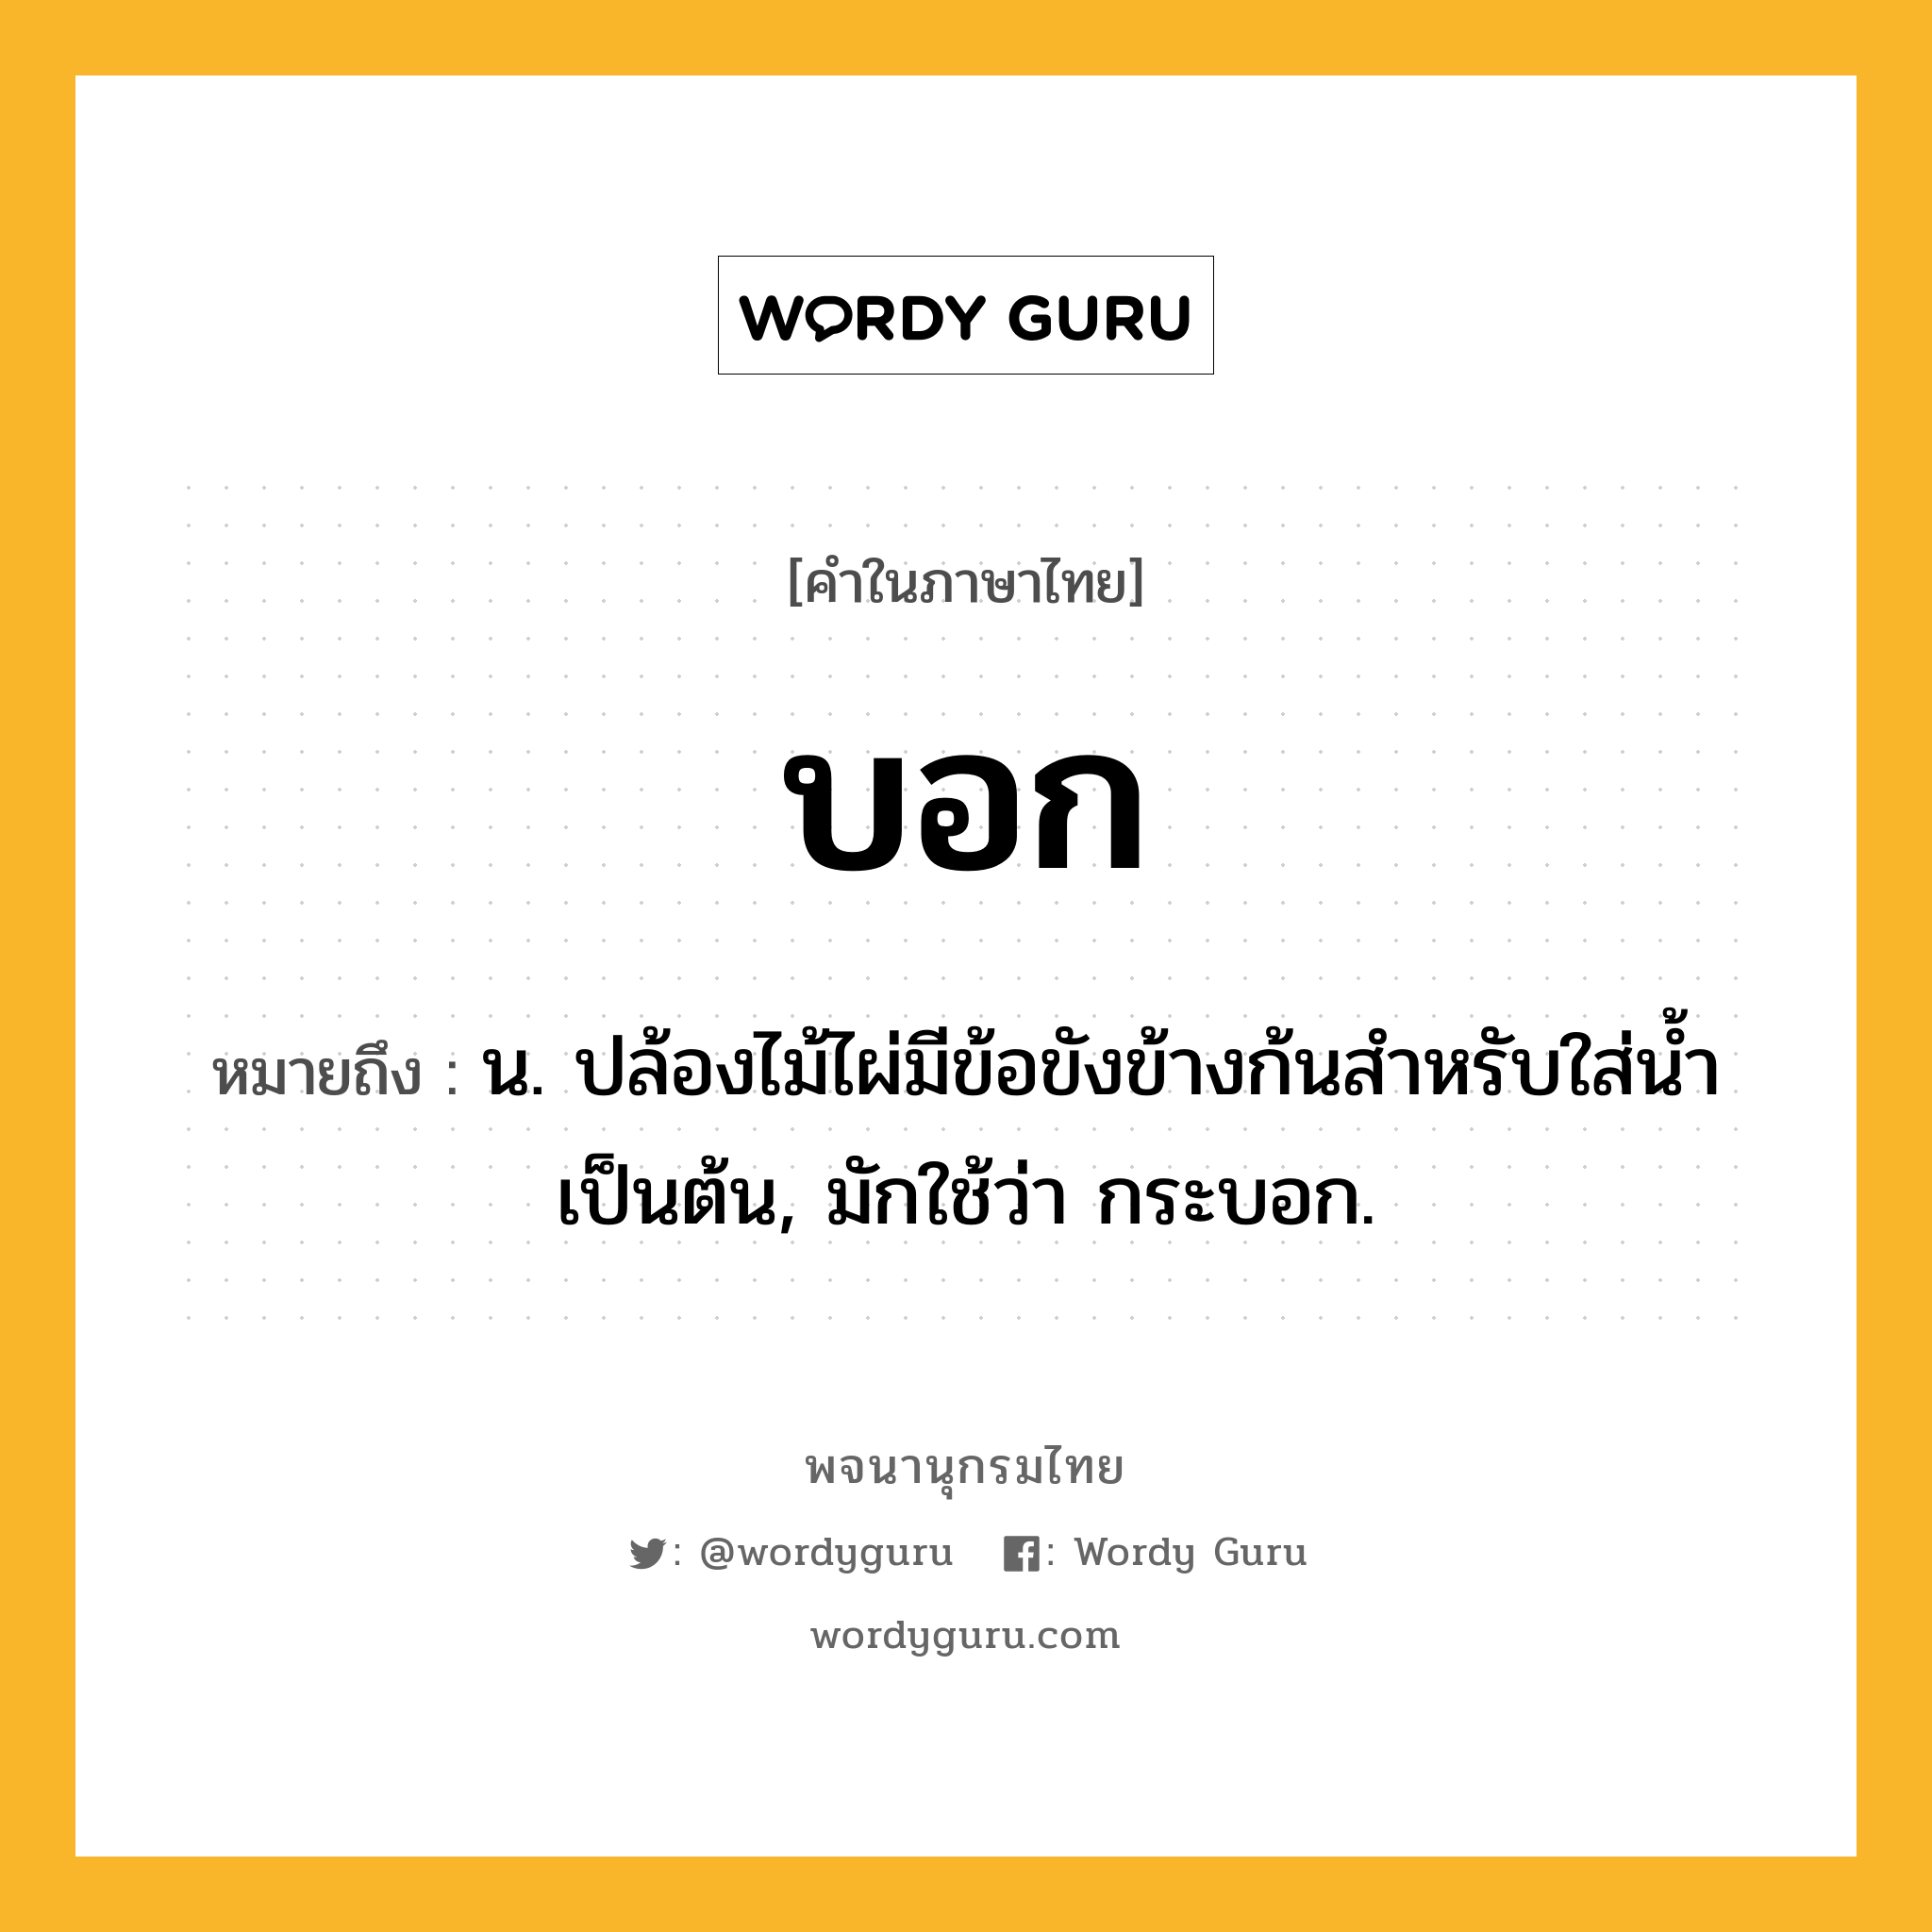 บอก ความหมาย หมายถึงอะไร?, คำในภาษาไทย บอก หมายถึง น. ปล้องไม้ไผ่มีข้อขังข้างก้นสําหรับใส่นํ้าเป็นต้น, มักใช้ว่า กระบอก.